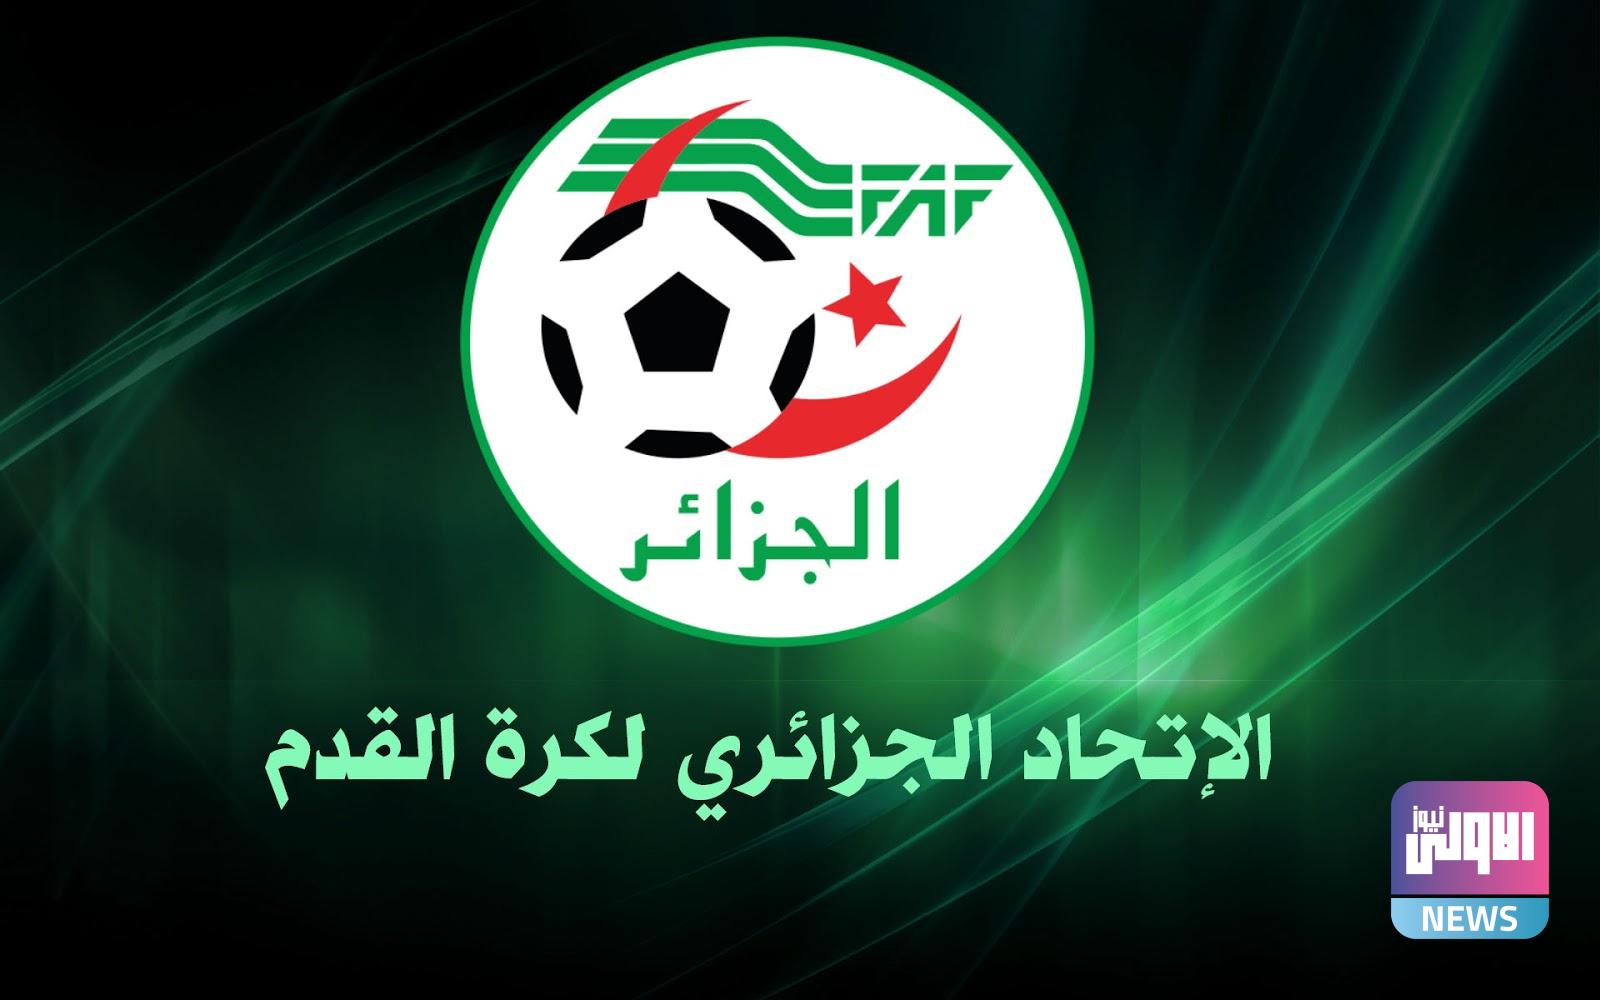 الإتحاد الجزائري لكرة القدم ثقف عقلك